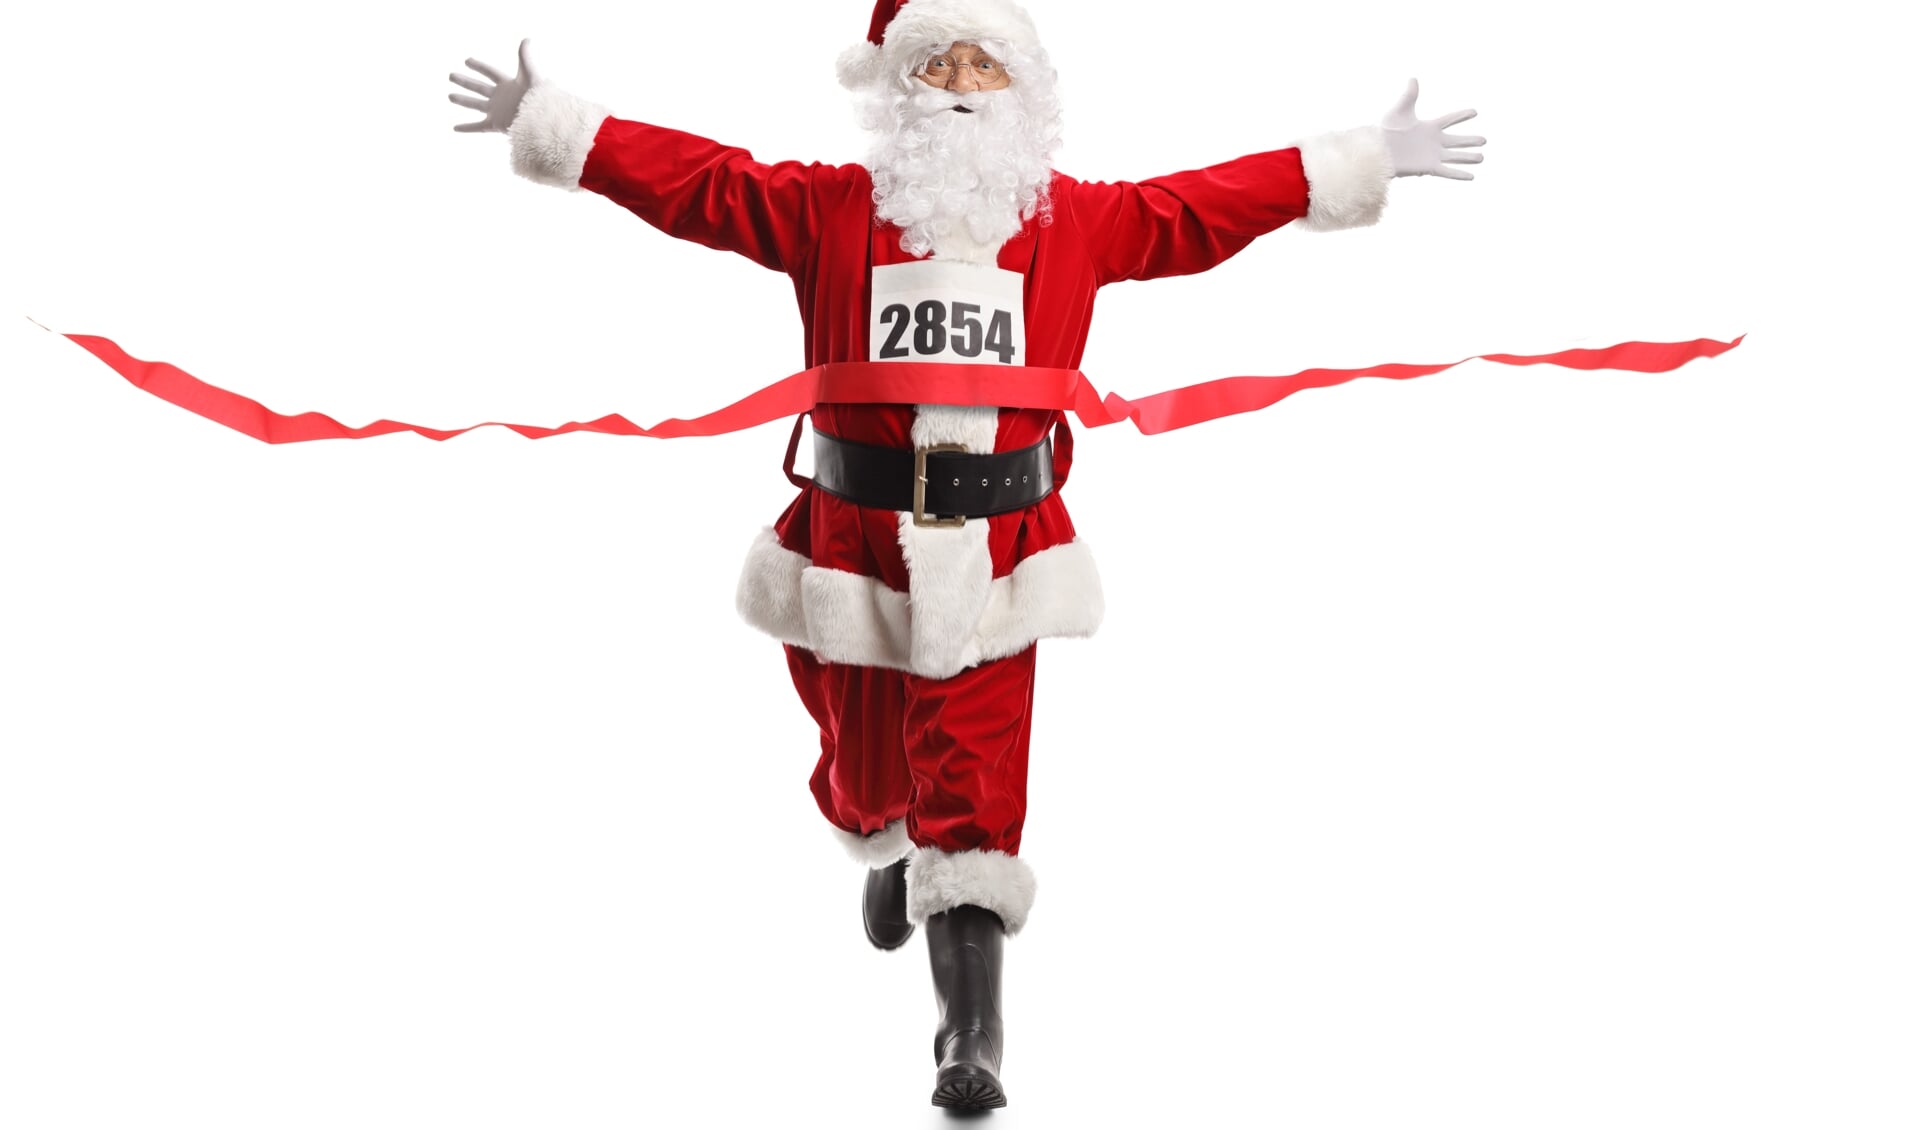 Verkleed als kerstman door het Stadshart rennen voor het goede doel